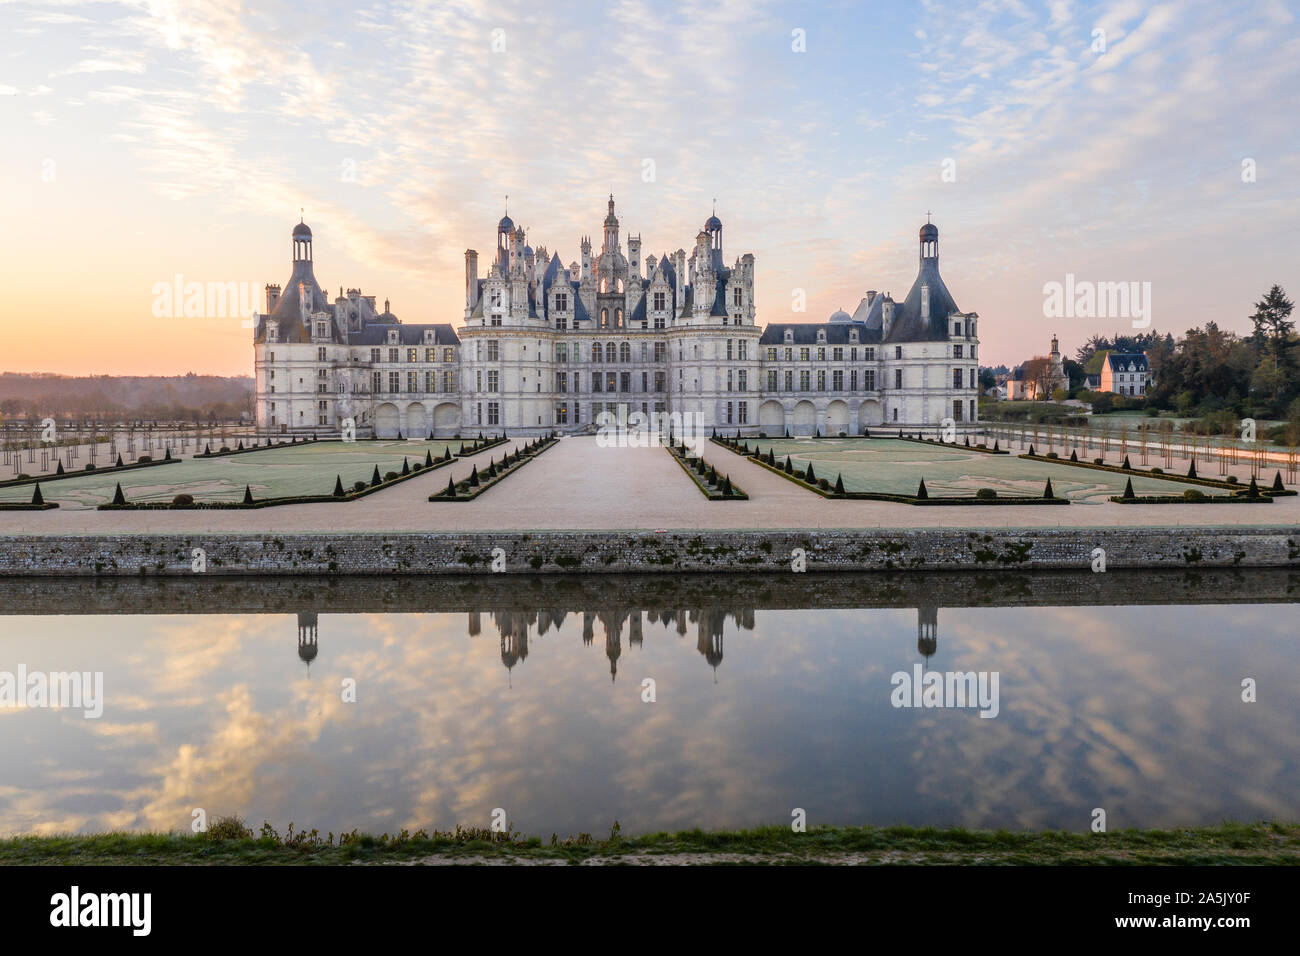 Frankreich, Maine et Loire, Loire-Tal UNESCO Weltkulturerbe, Chambord, das königliche Schloss, die französischen Gärten und den Fluss kanalisiert Cosson, sunr Stockfoto